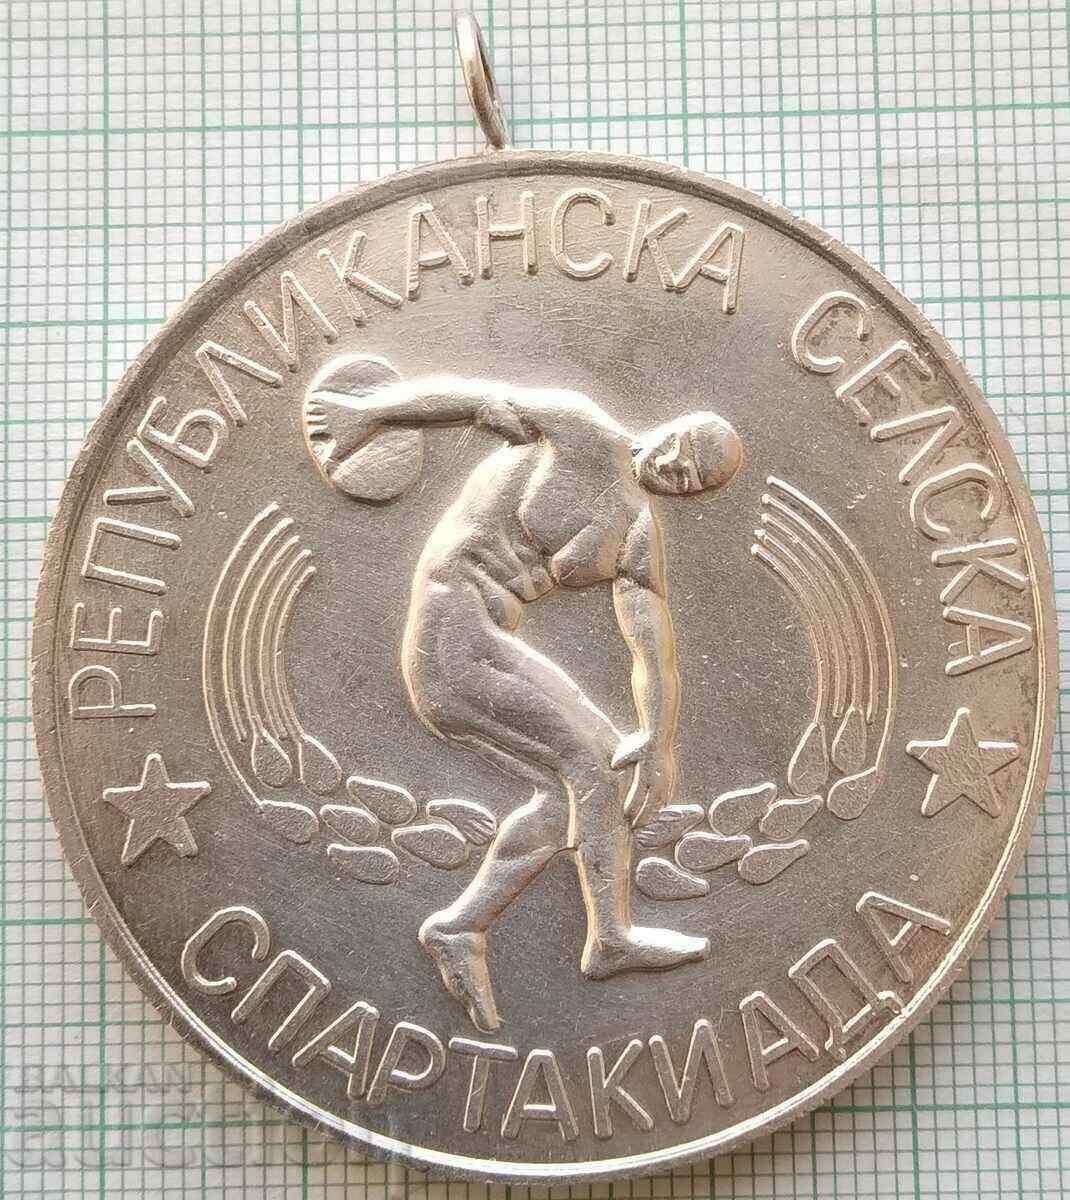 14973 Μετάλλιο Σπαρτακιάδας - Πρωτοπόροι 1975 - 50 χλστ